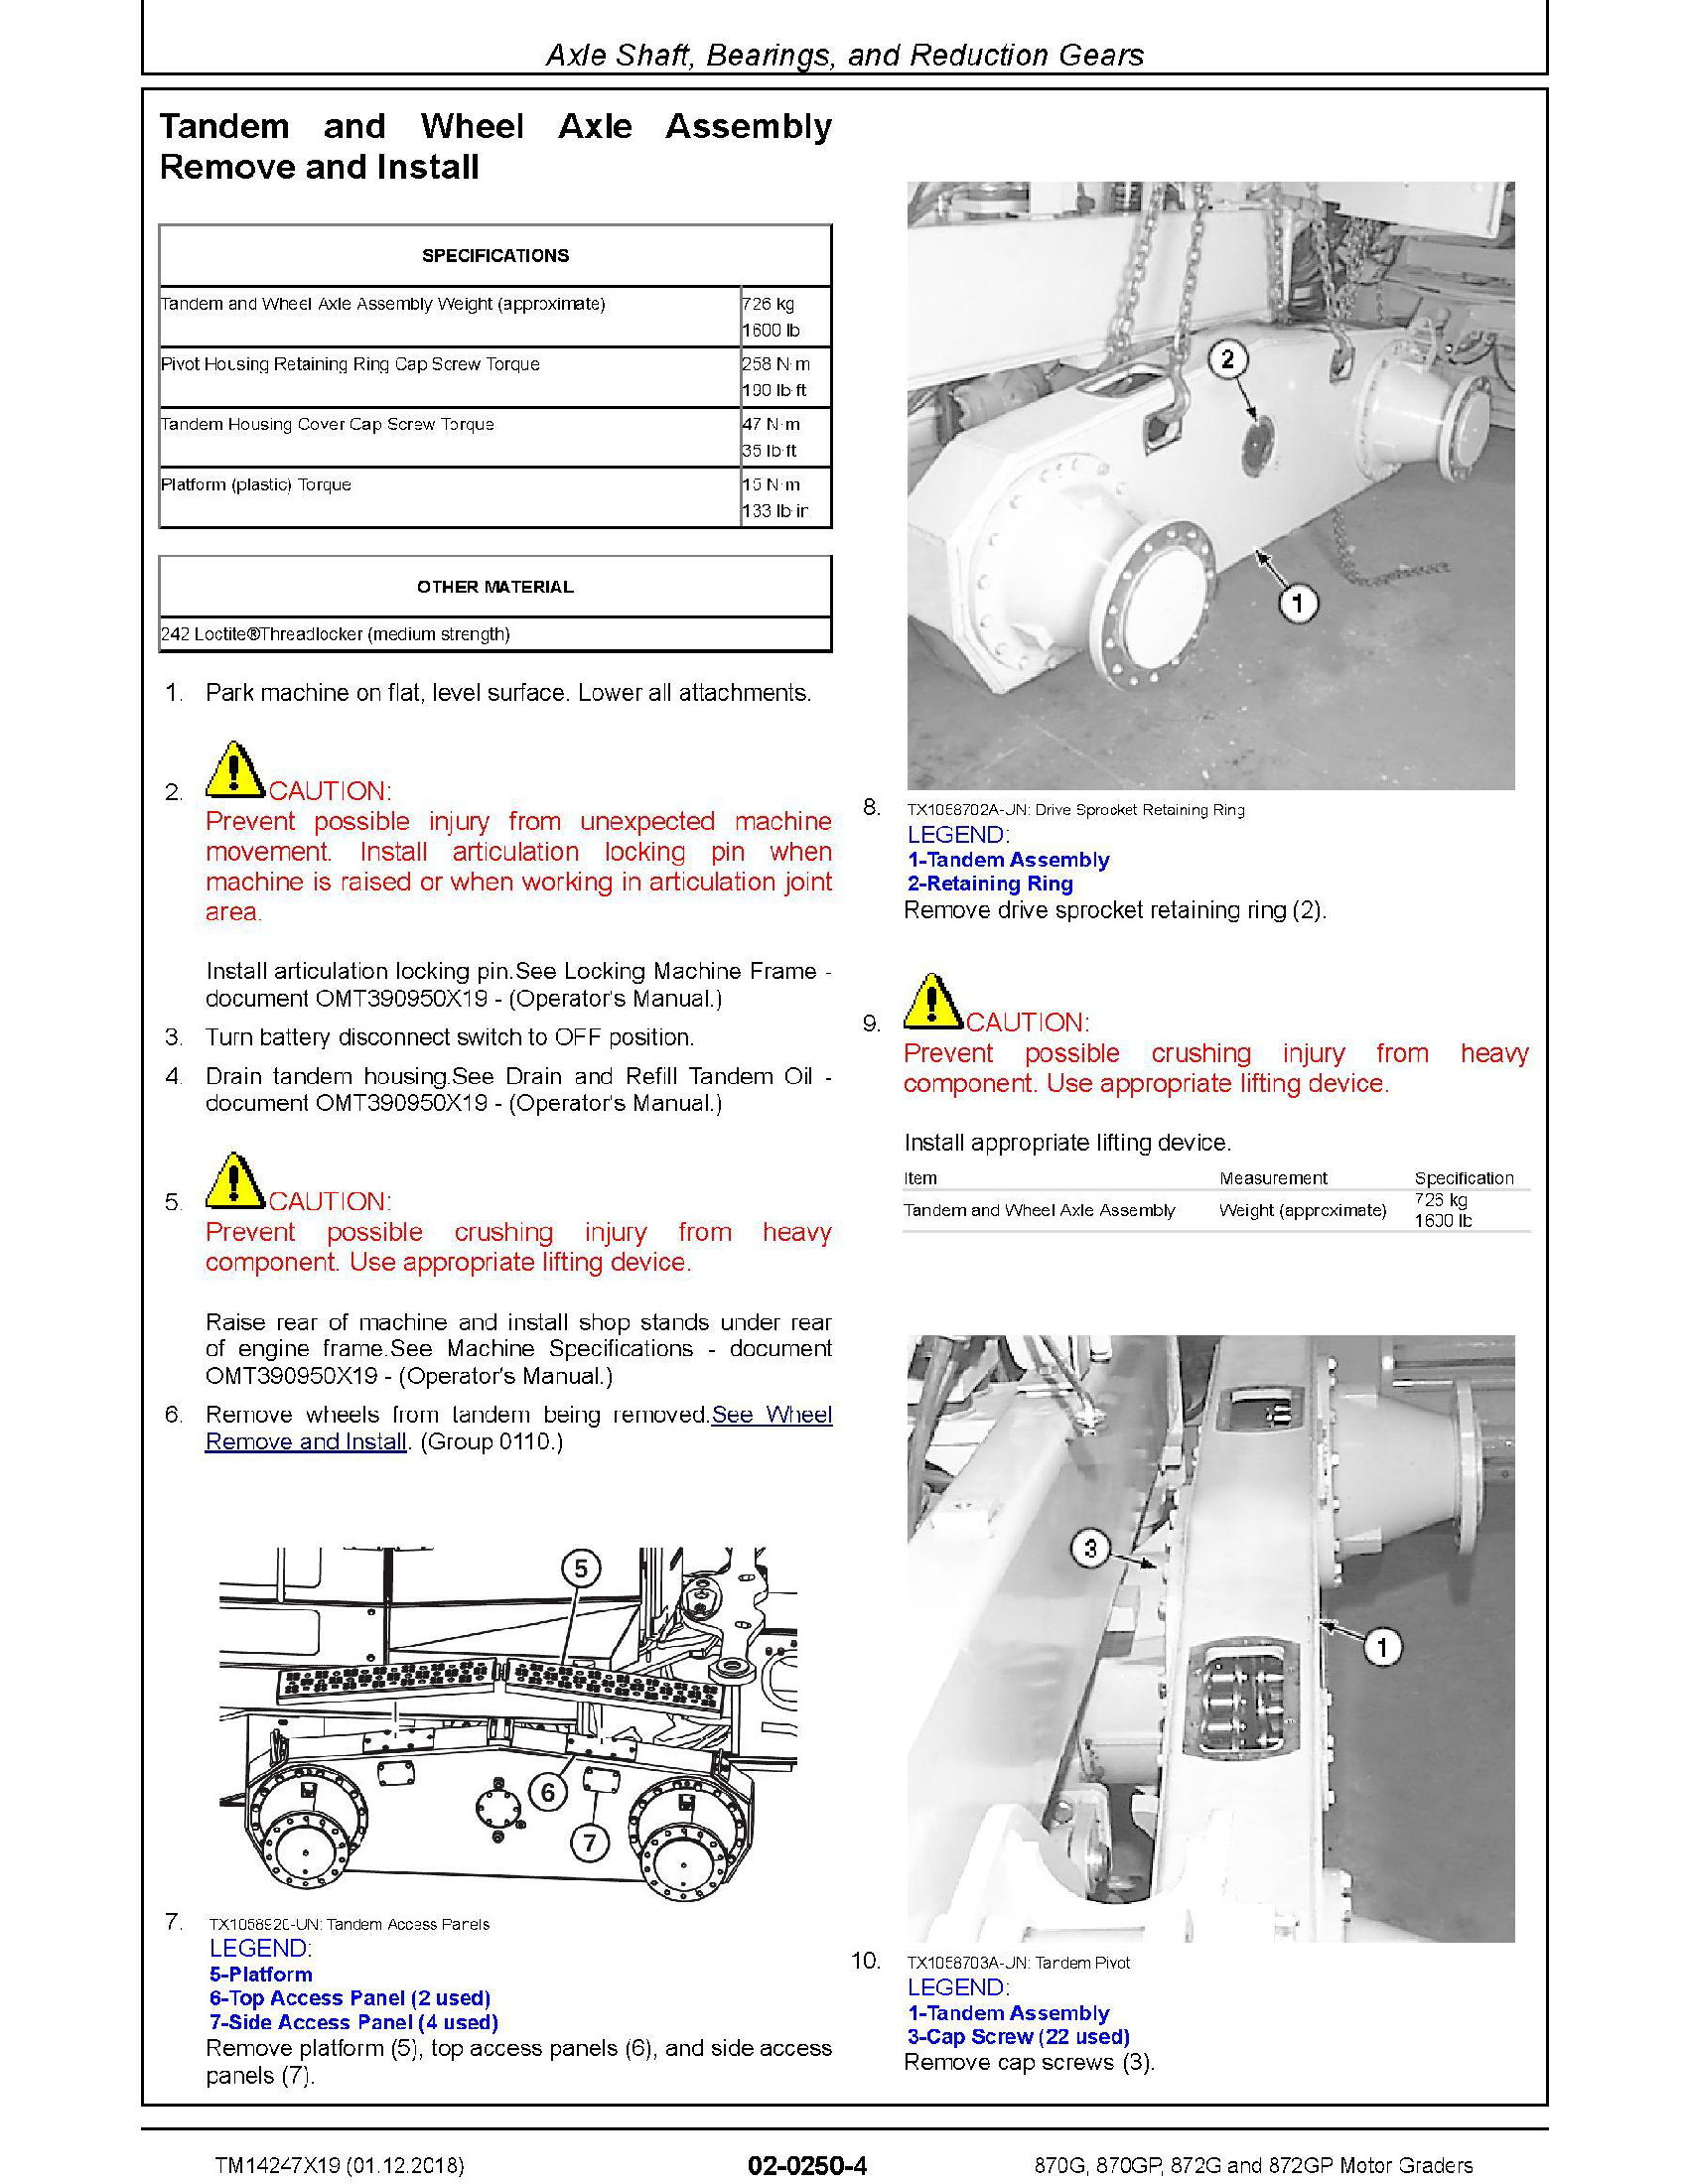 John Deere 936 manual pdf